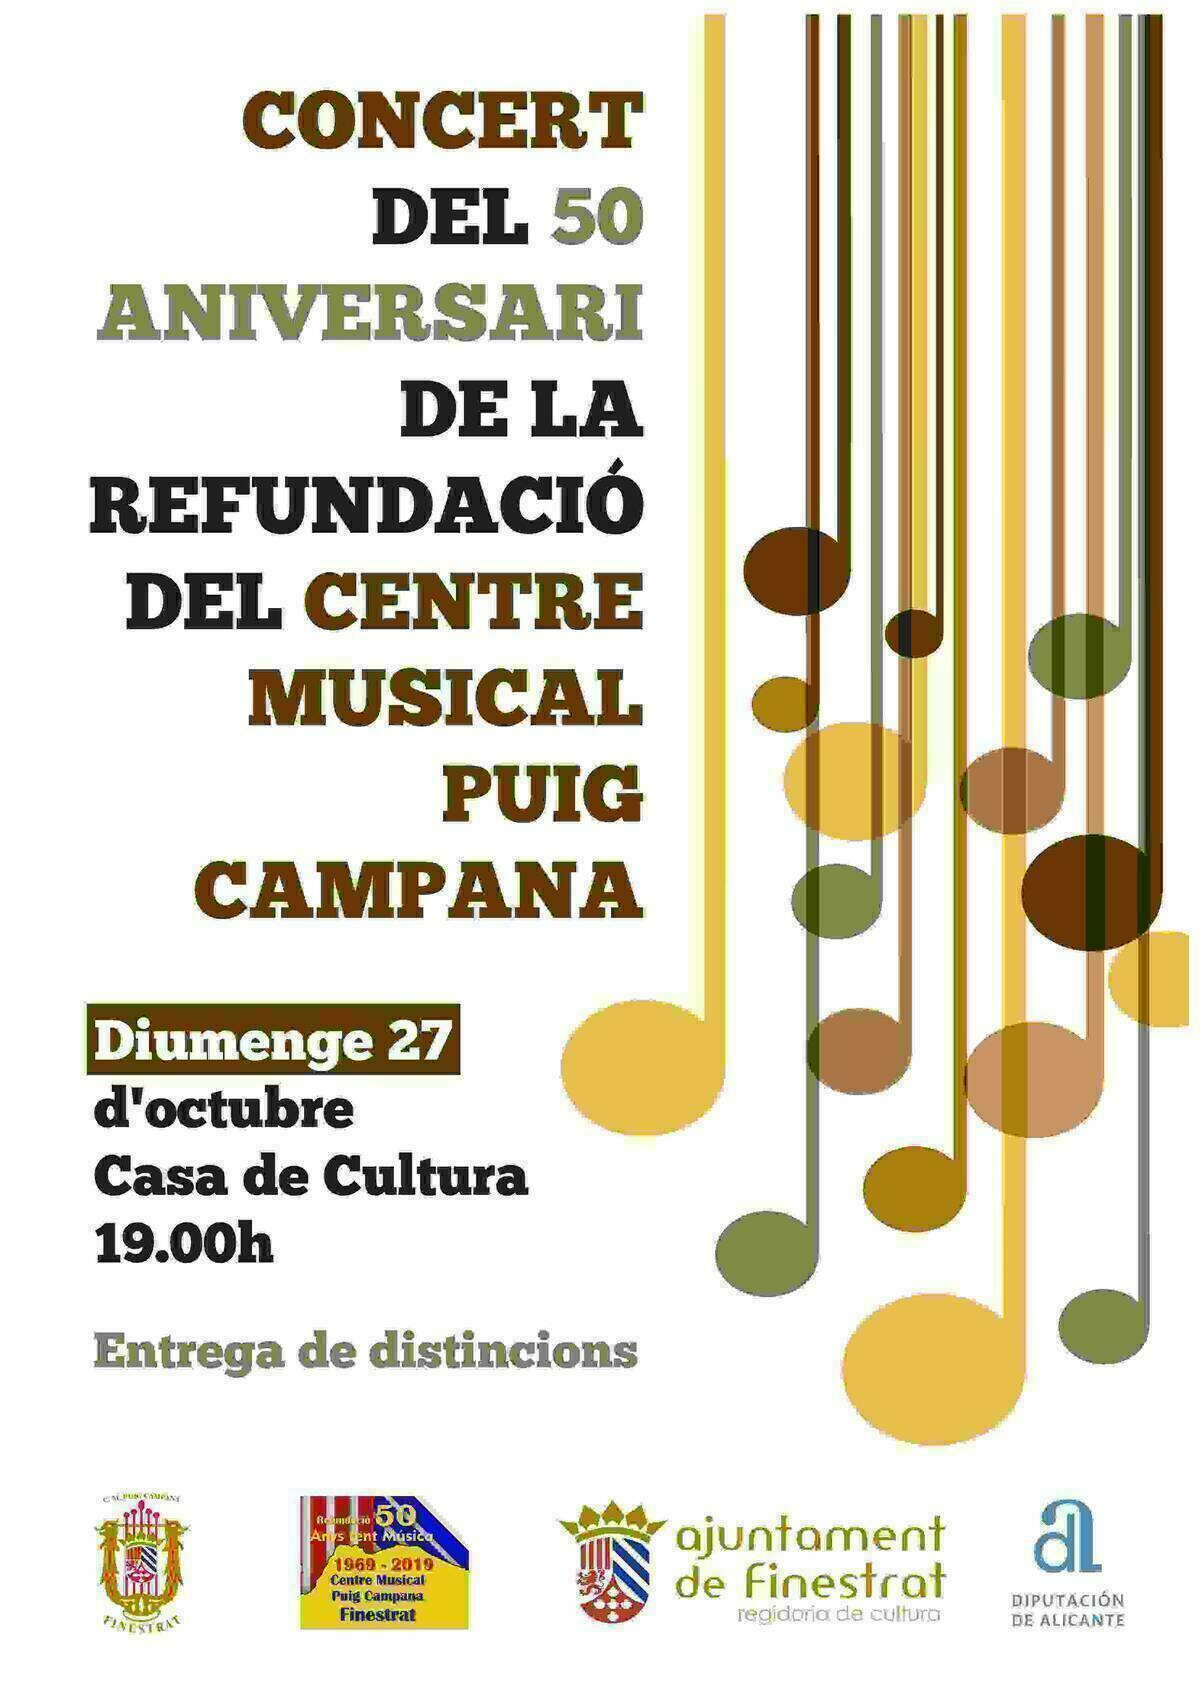 Este domingo comienza el año conmemorativo de actos por el 50º aniversario de la refundación del Centre Musical Puig Campana